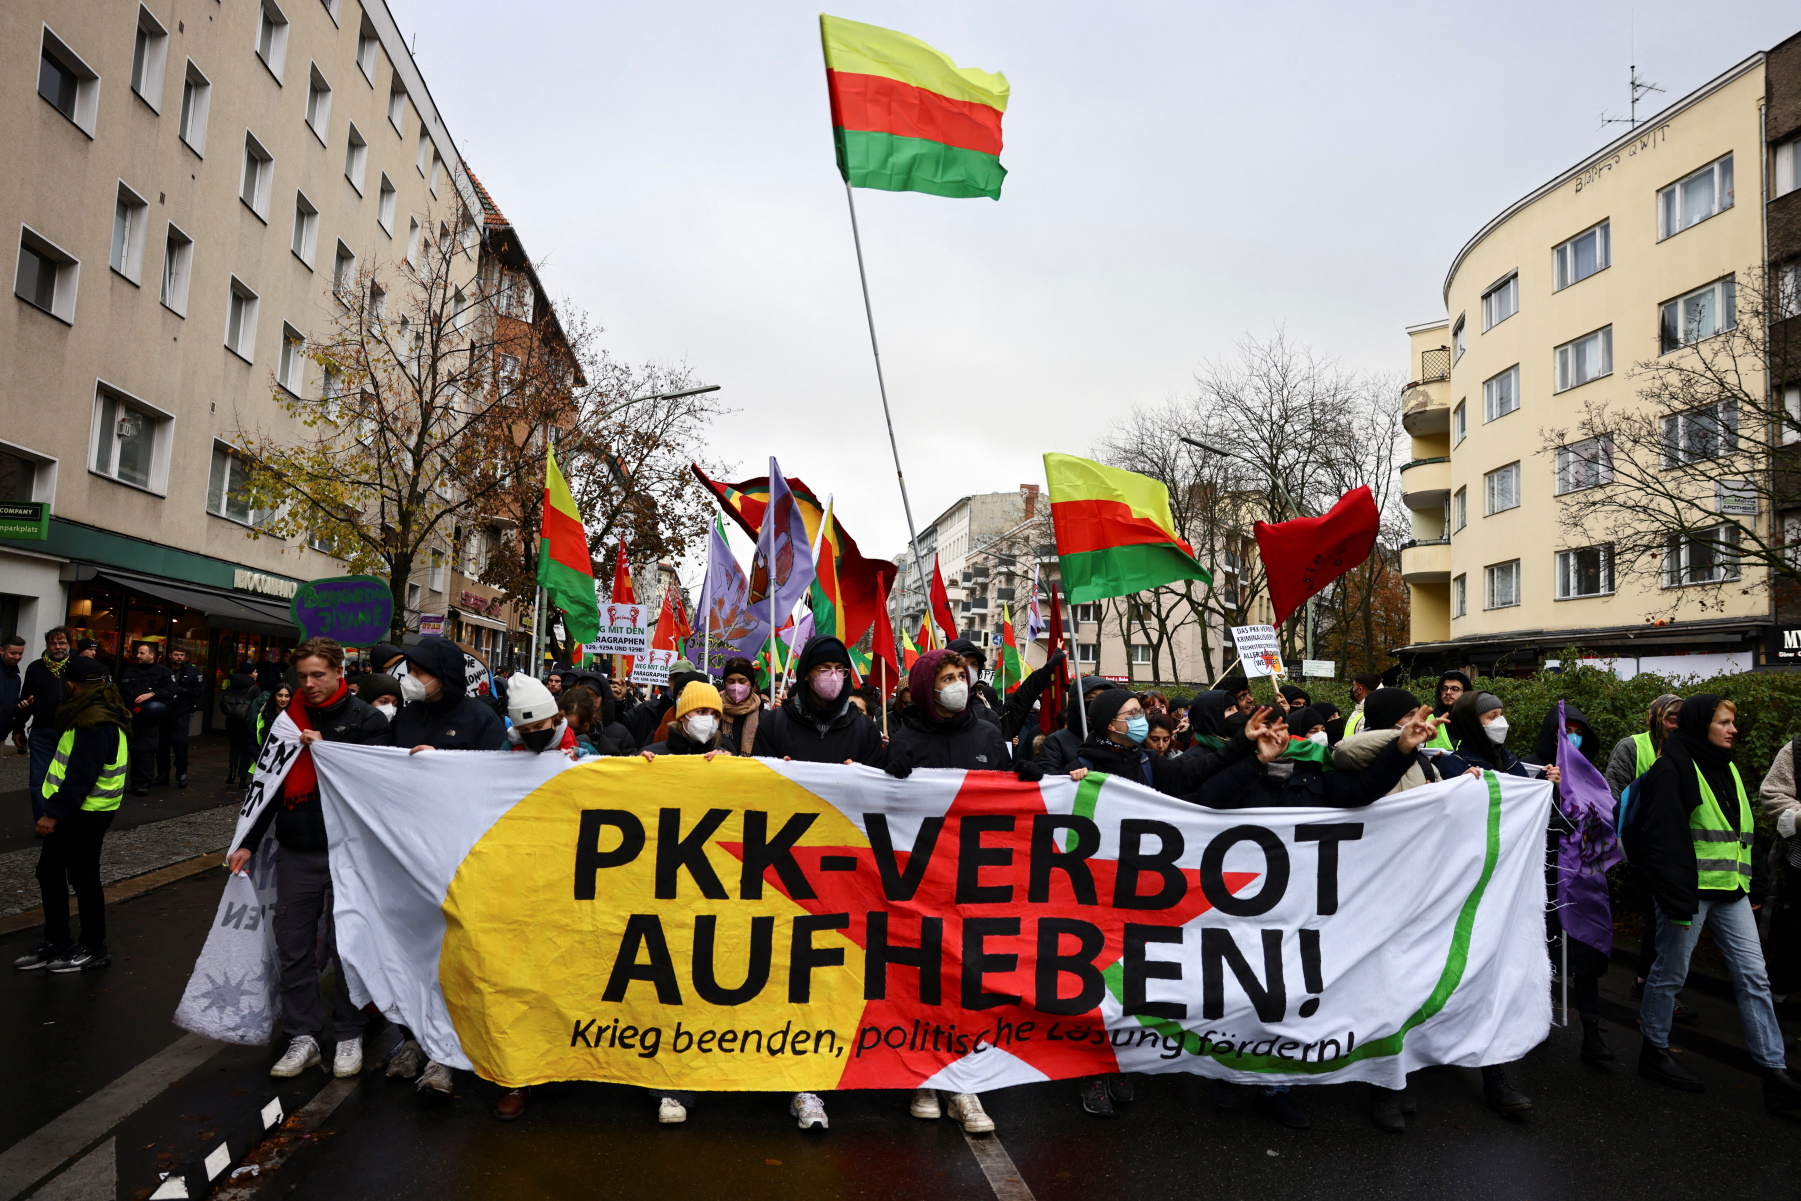 Σουηδία: Έστειλε Κούρδο του PKK στην Τουρκία – Δικάζεται ως τρομοκράτης στην Κωνσταντινούπολη